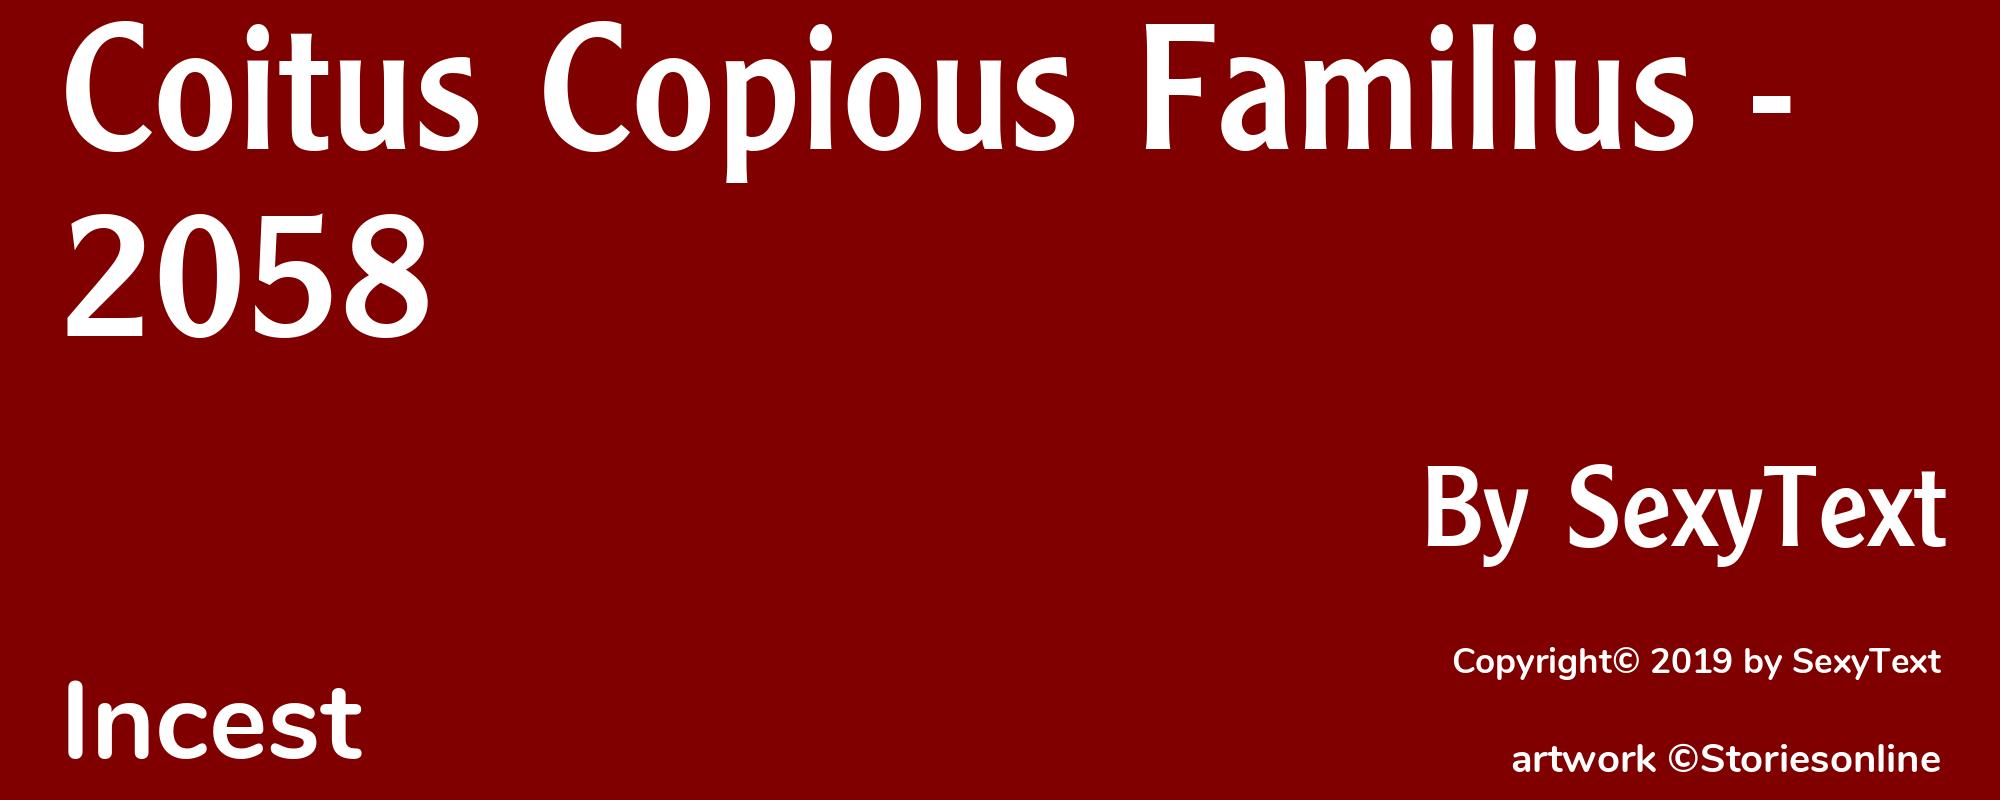 Coitus Copious Familius - 2058 - Cover